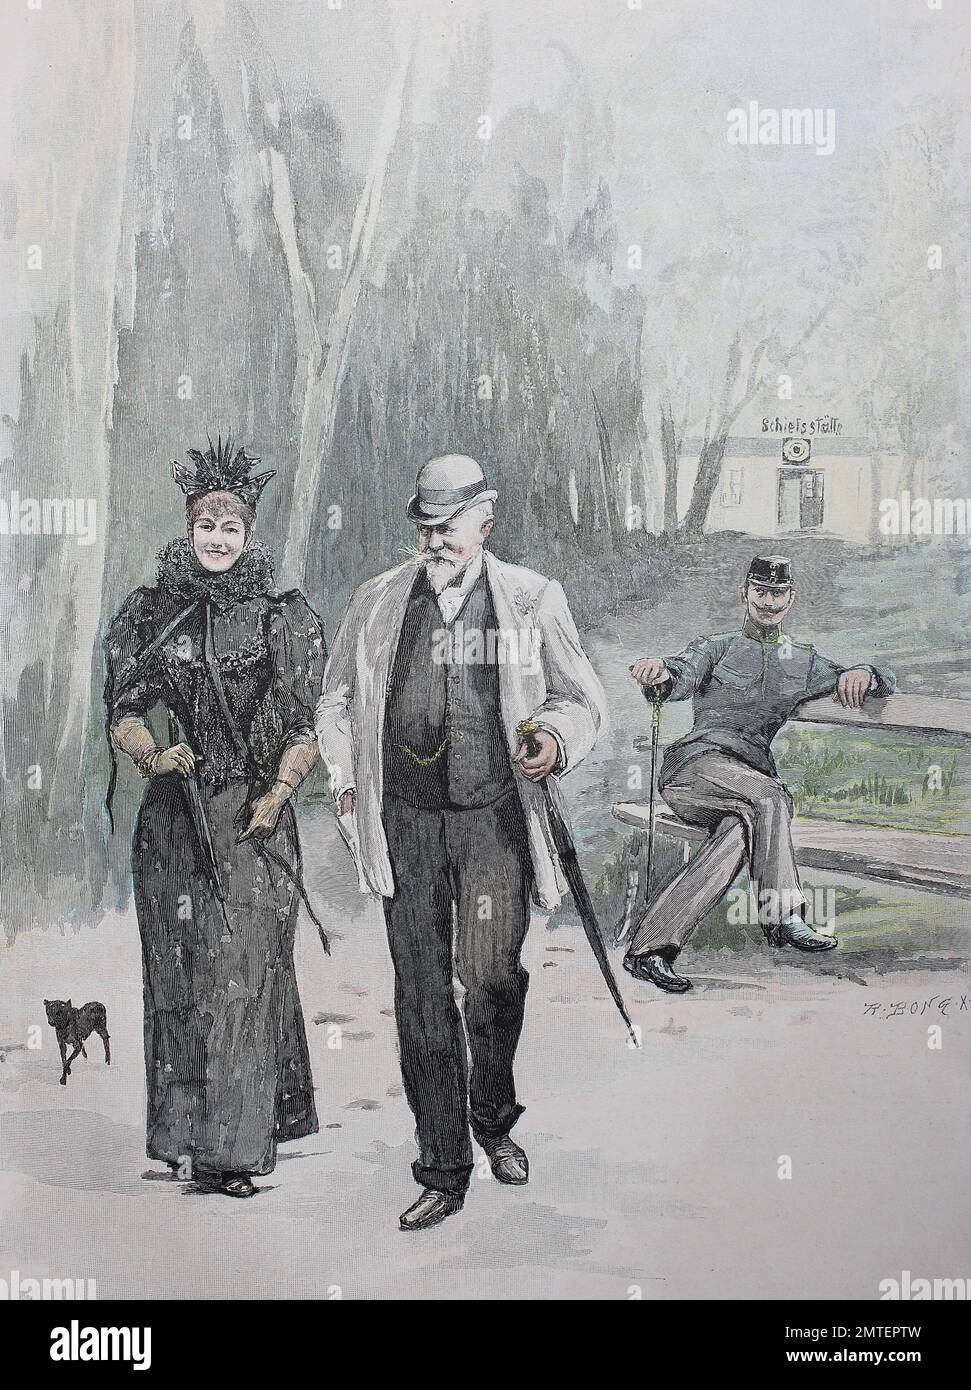 Poligono di tiro o il poligono di tiro a Marianske Lazne, Marienbad, una città termale nella Regione di Karlovy Vary della Repubblica ceca, illustrazione pubblicato nel 1880 Foto Stock